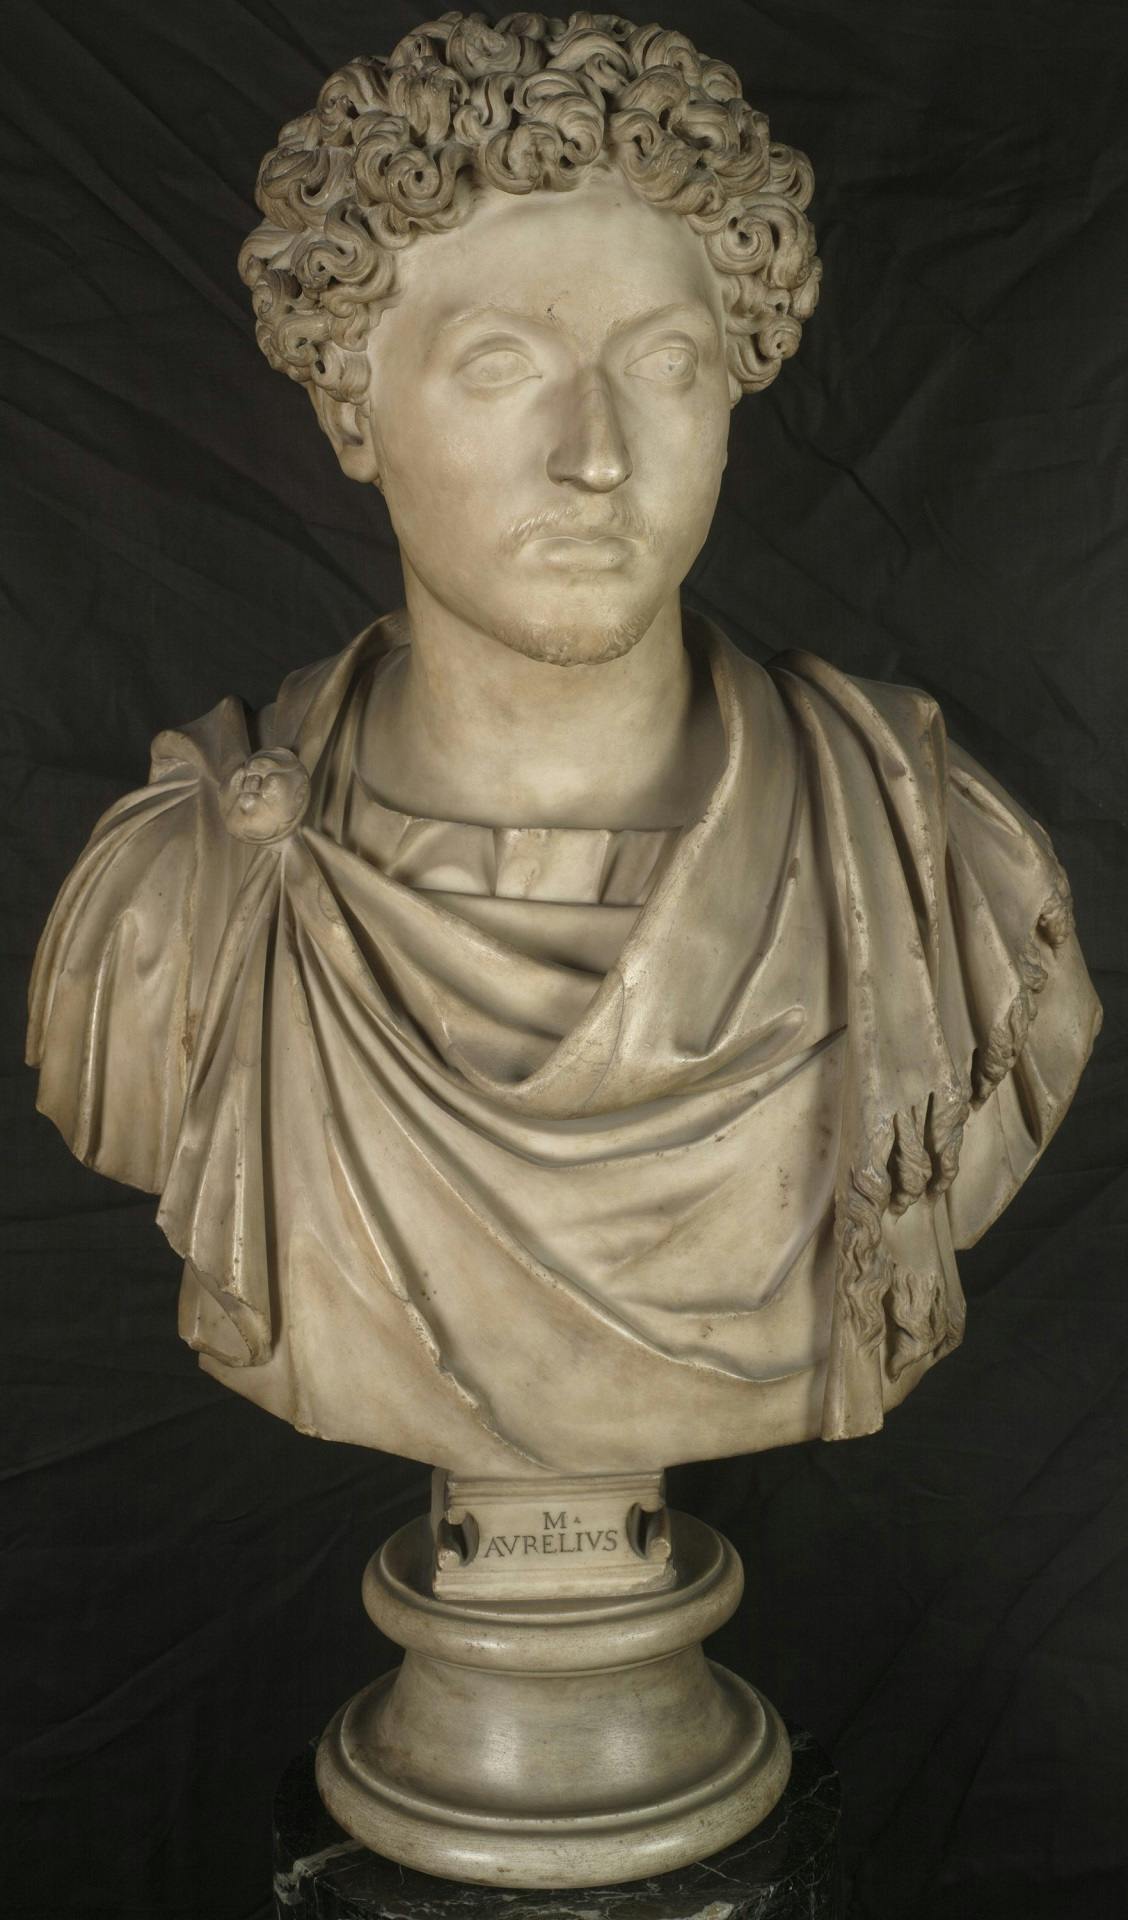 Portrait of Marcus Aurelius